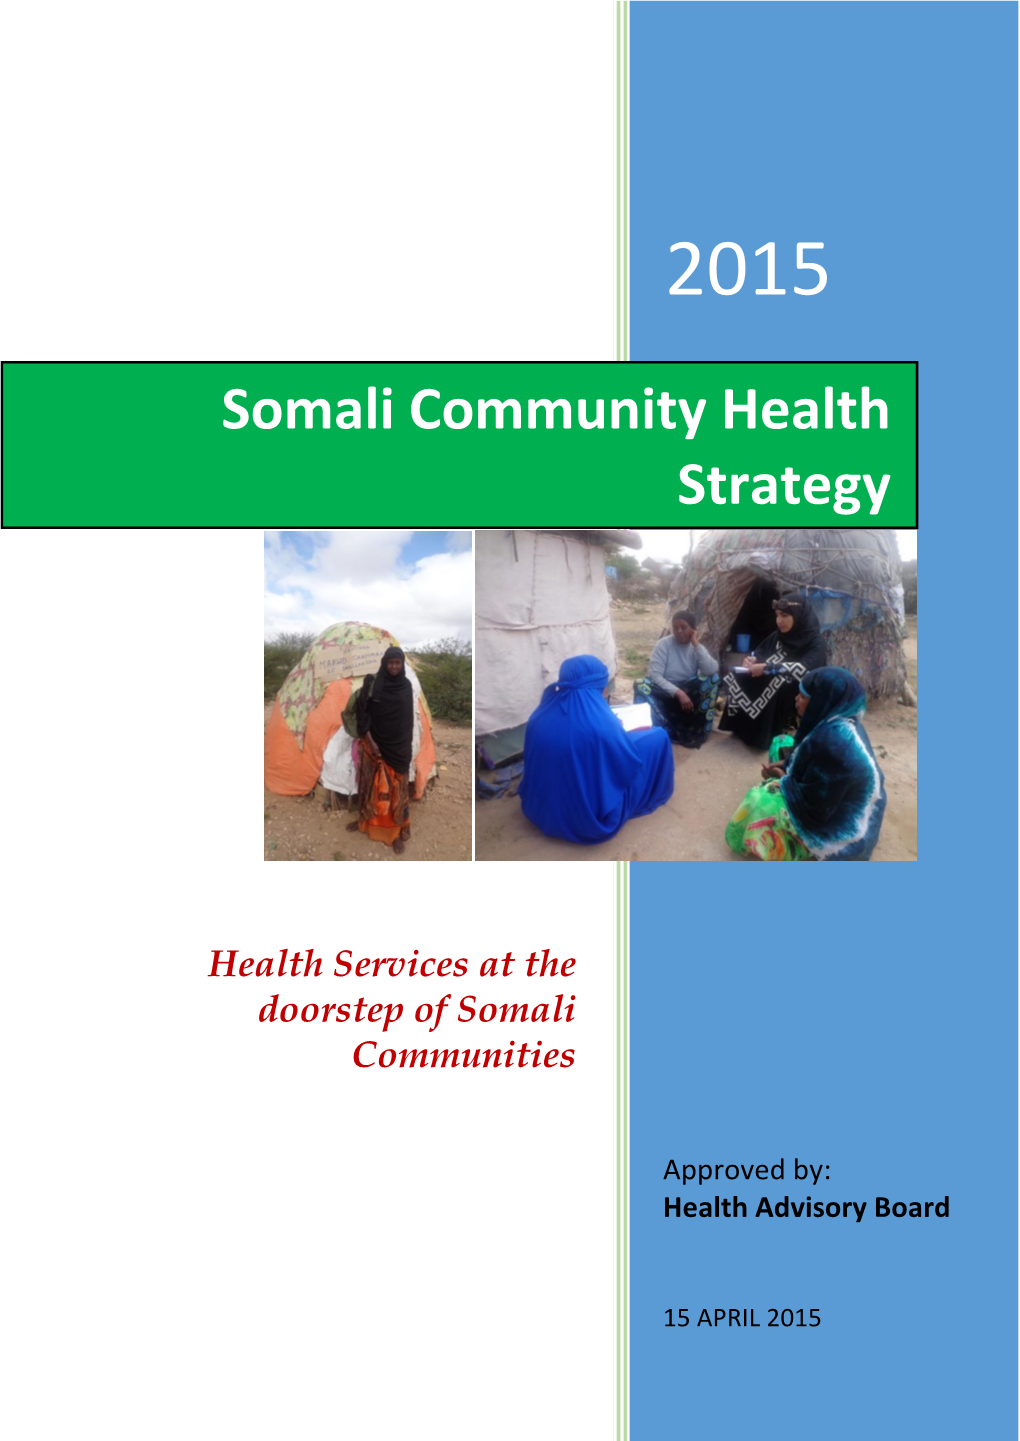 Somali Community Health Strategy 2015